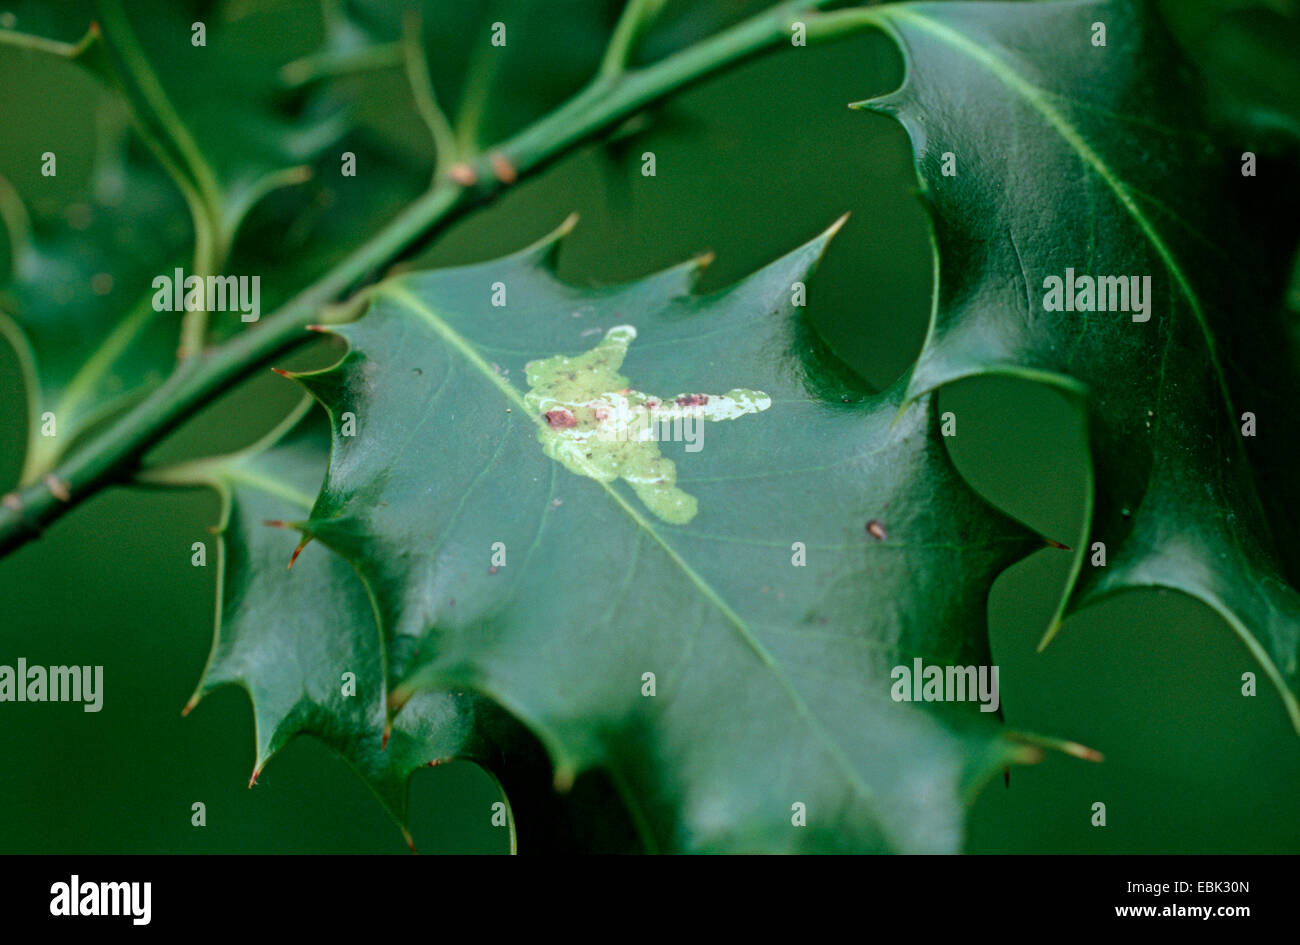 holly leafminer (Phytomyza ilicis), damage of a leaf of Common holly, Ilex aquifolium Stock Photo